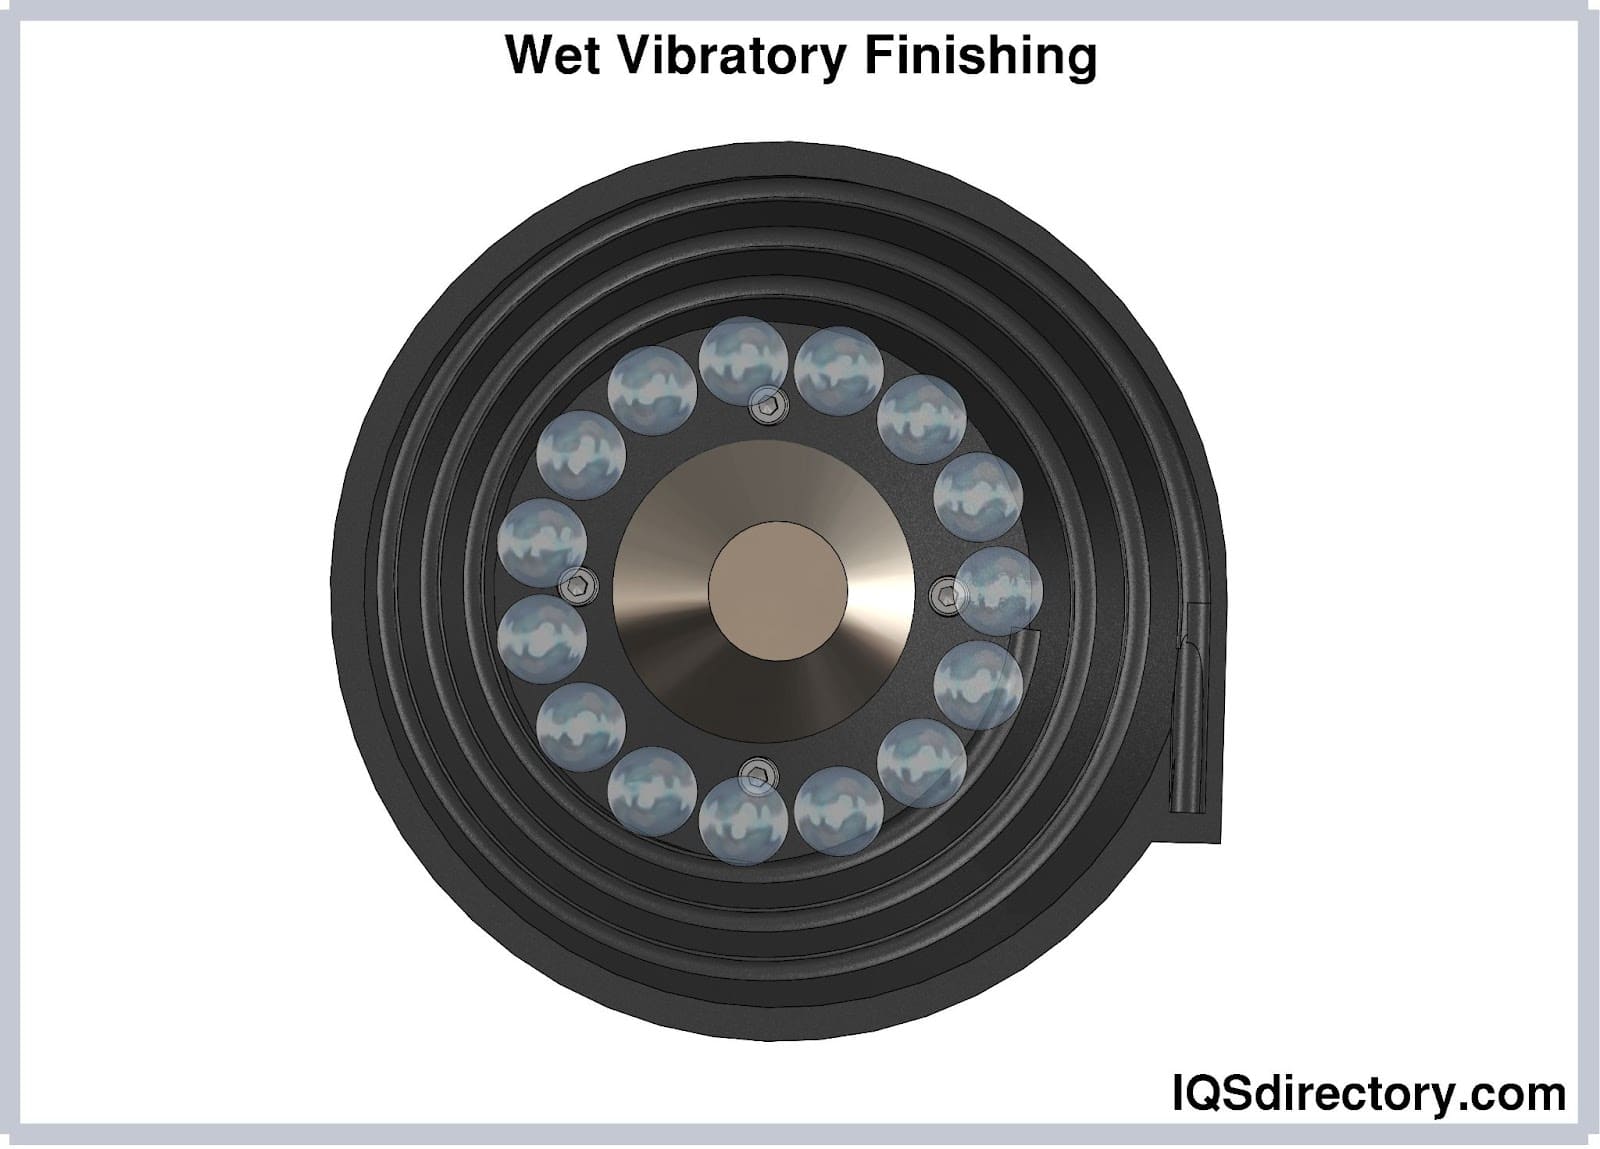 Wet Vibratory Finishing